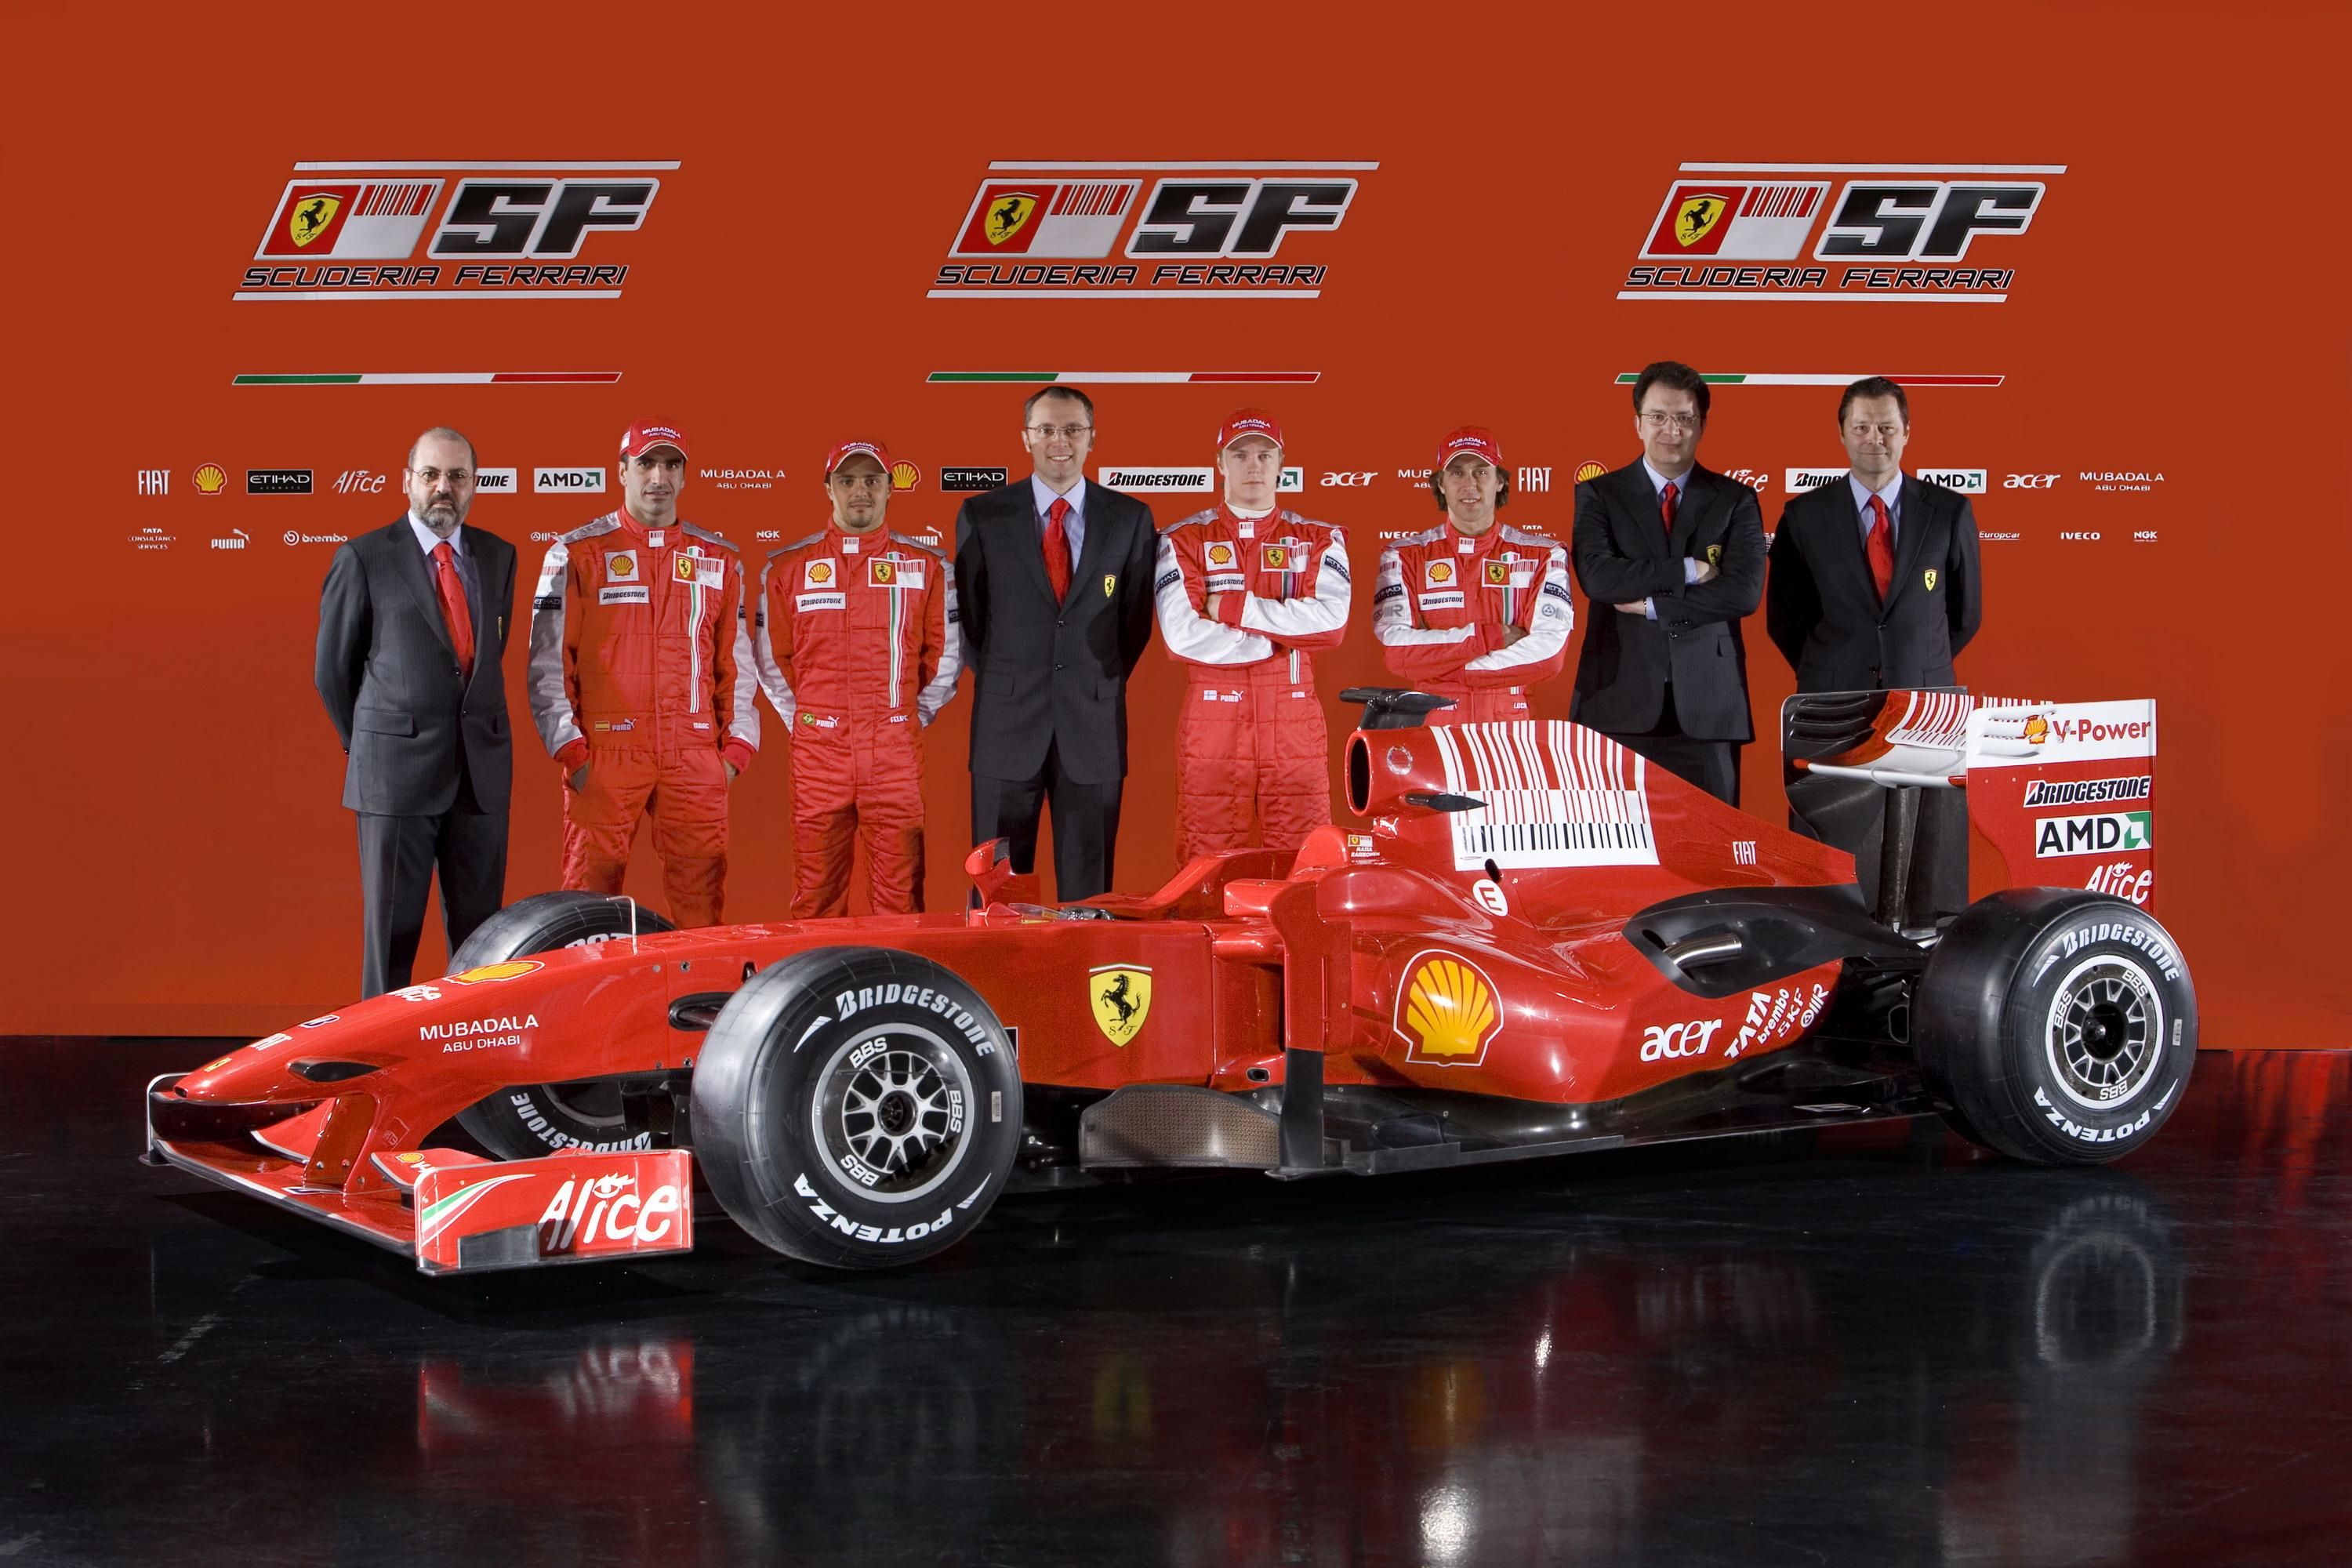 2009 Ferrari F60